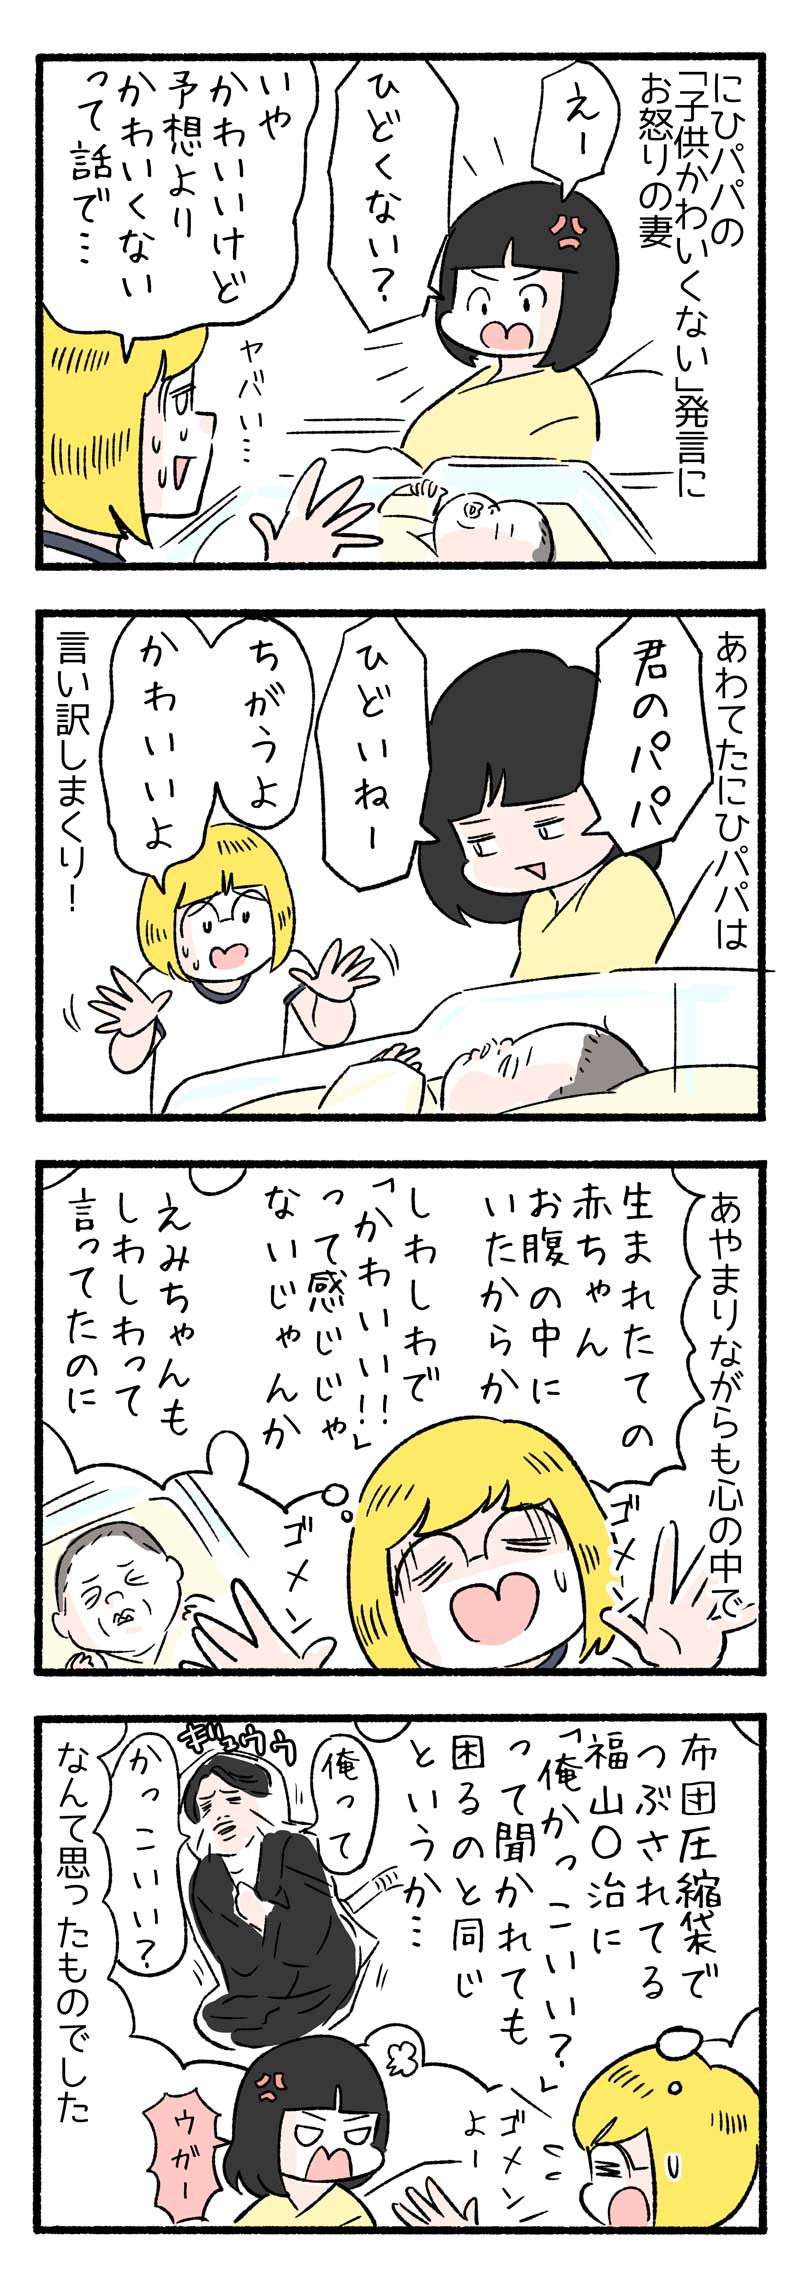 manga-nihipapa5_4sai